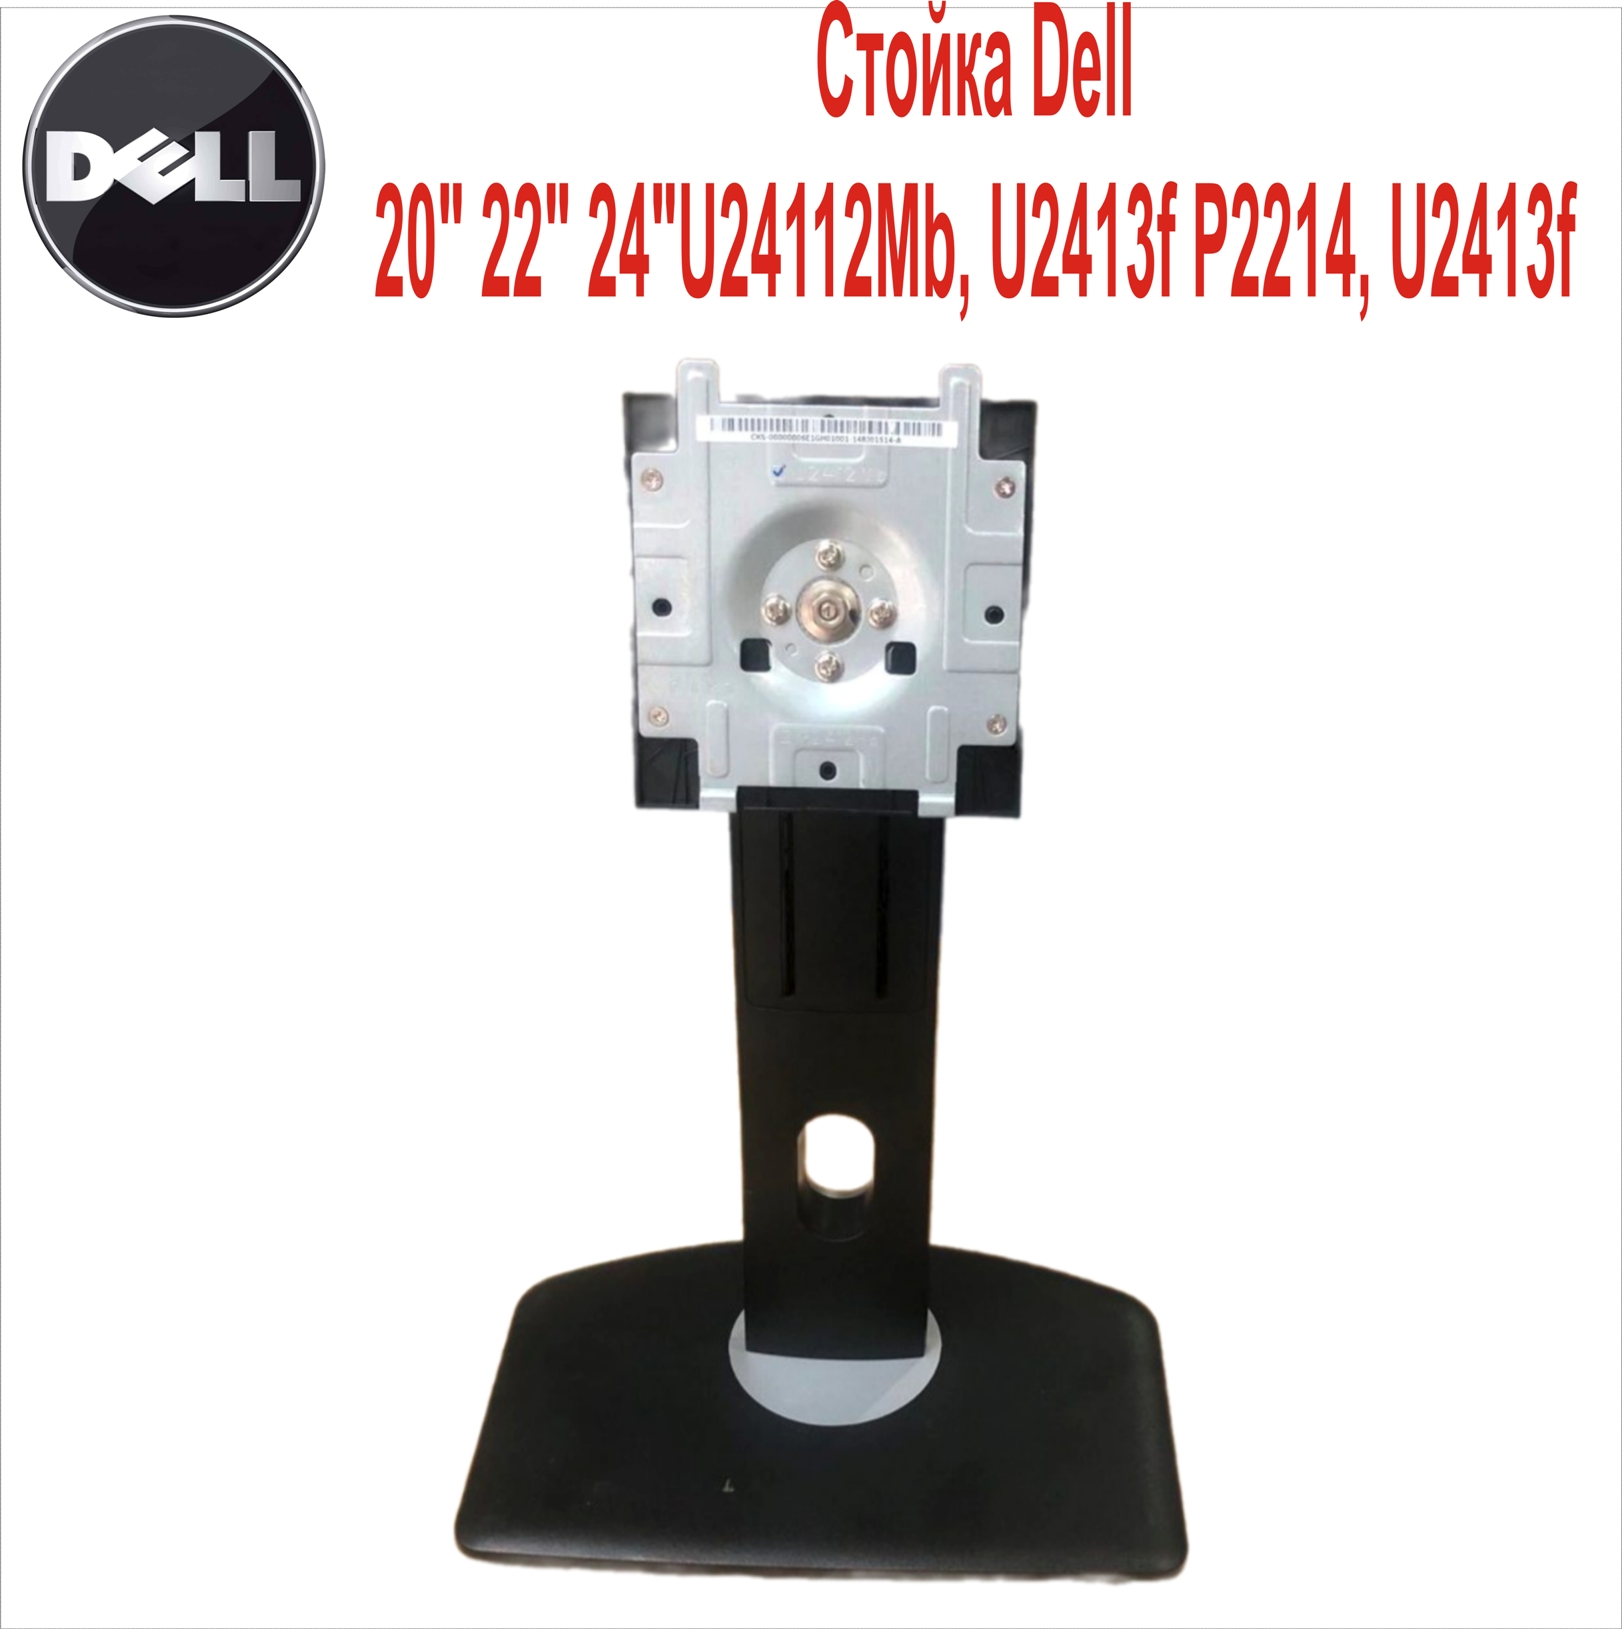 Стойка Dell 20“ 22“ 24“U24112Mb, U2413f P2214